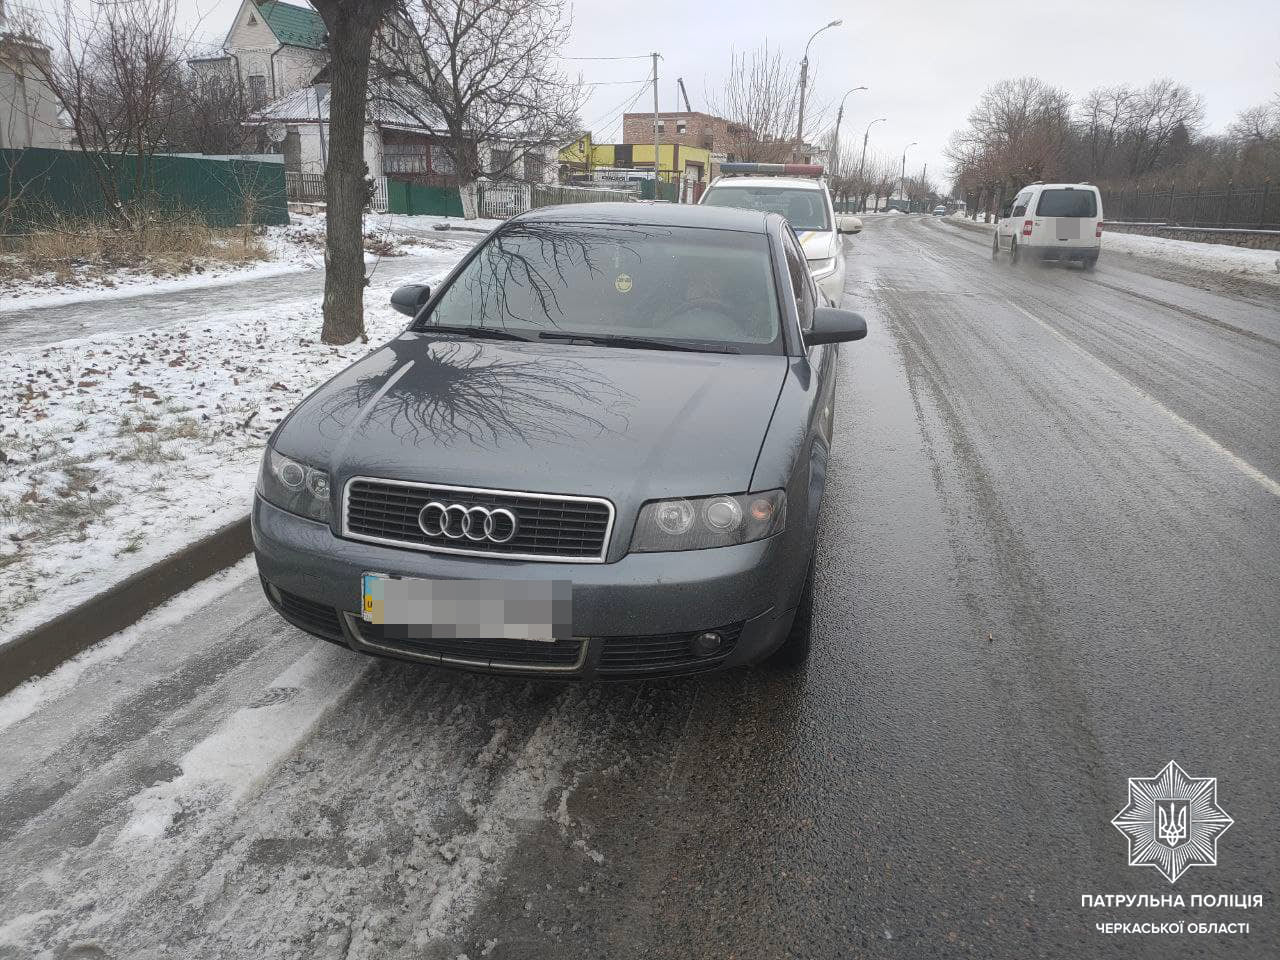 Поліцейські Черкащини виявили авто з підробленими документами